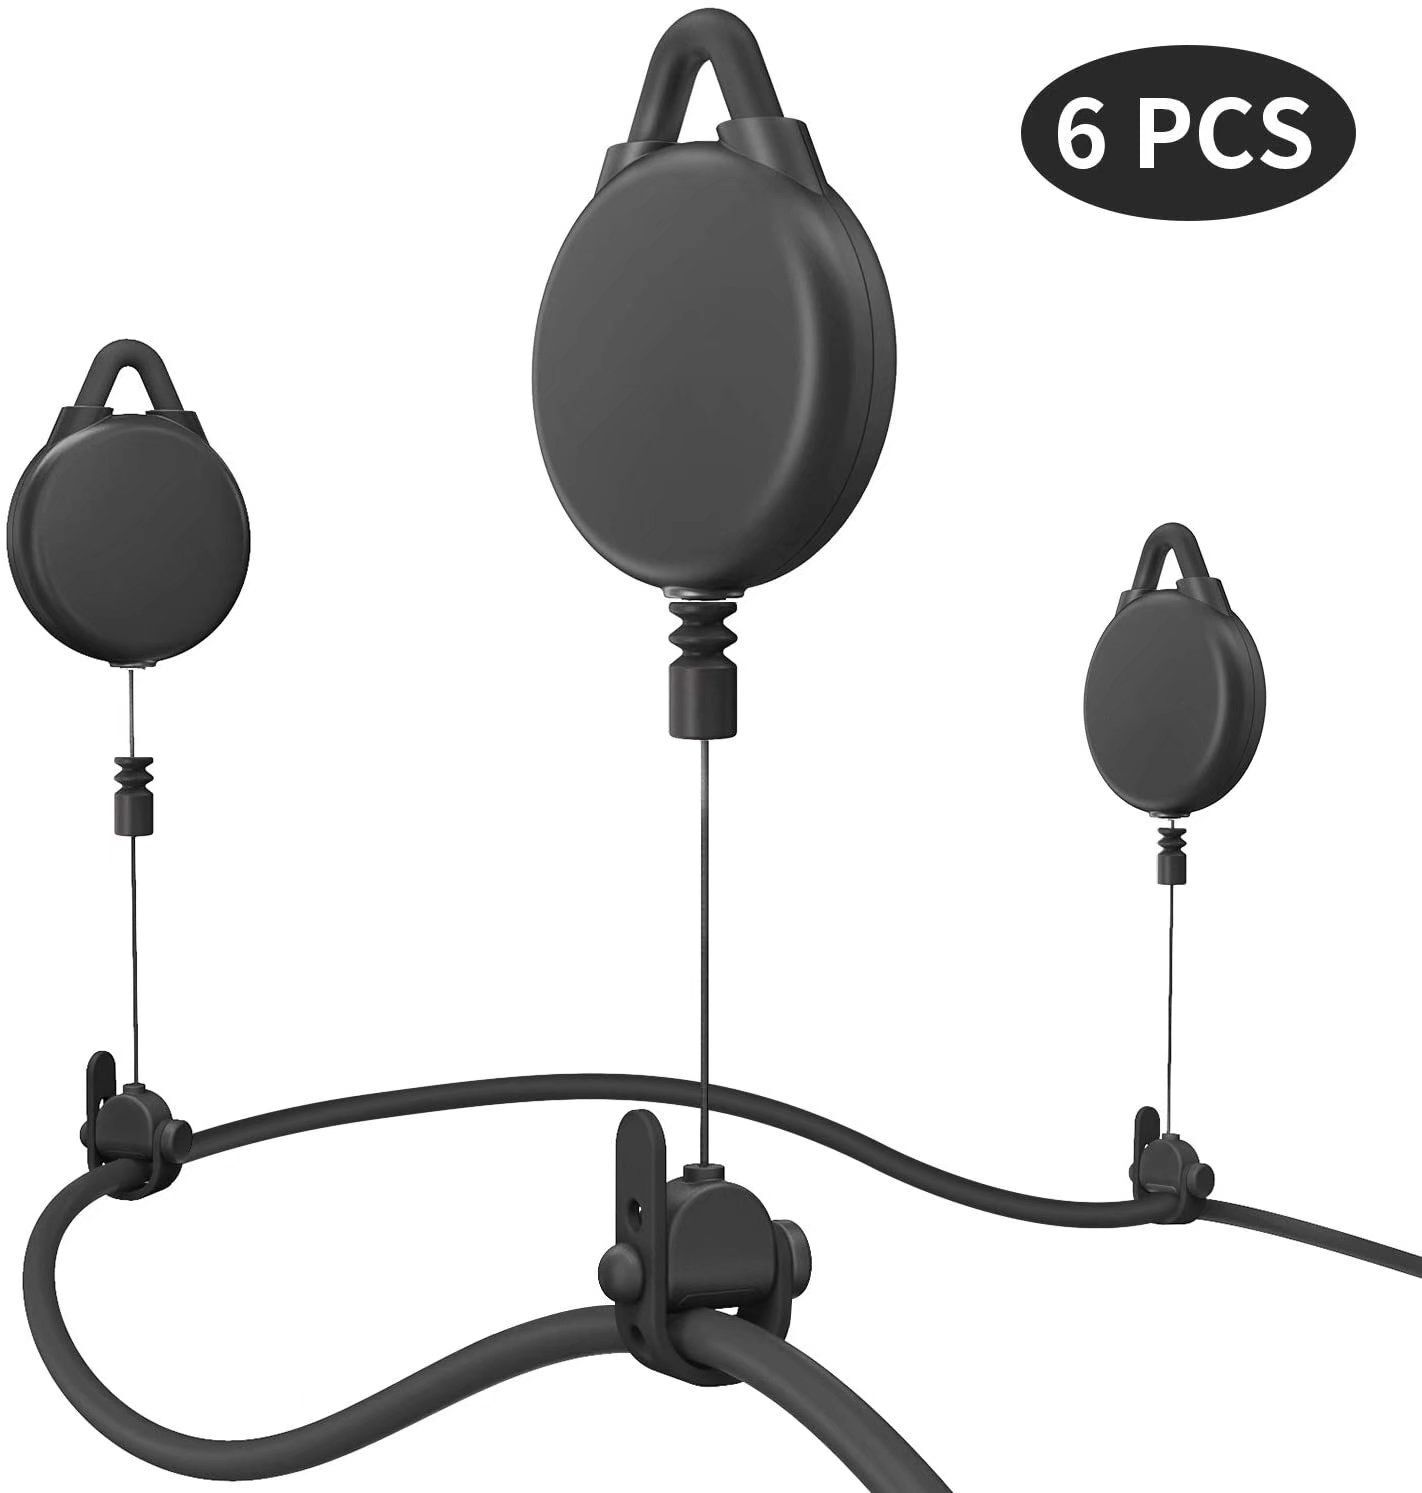 LITZEE Gestion des câbles VR, 6 packs Version Pro Gestion des câbles VR pour casques VR Accessoires HTC Vive / HTC Vive Pro / Oculus Rift S / Playstation / Microsoft MR / Valve Index VR (Noir)